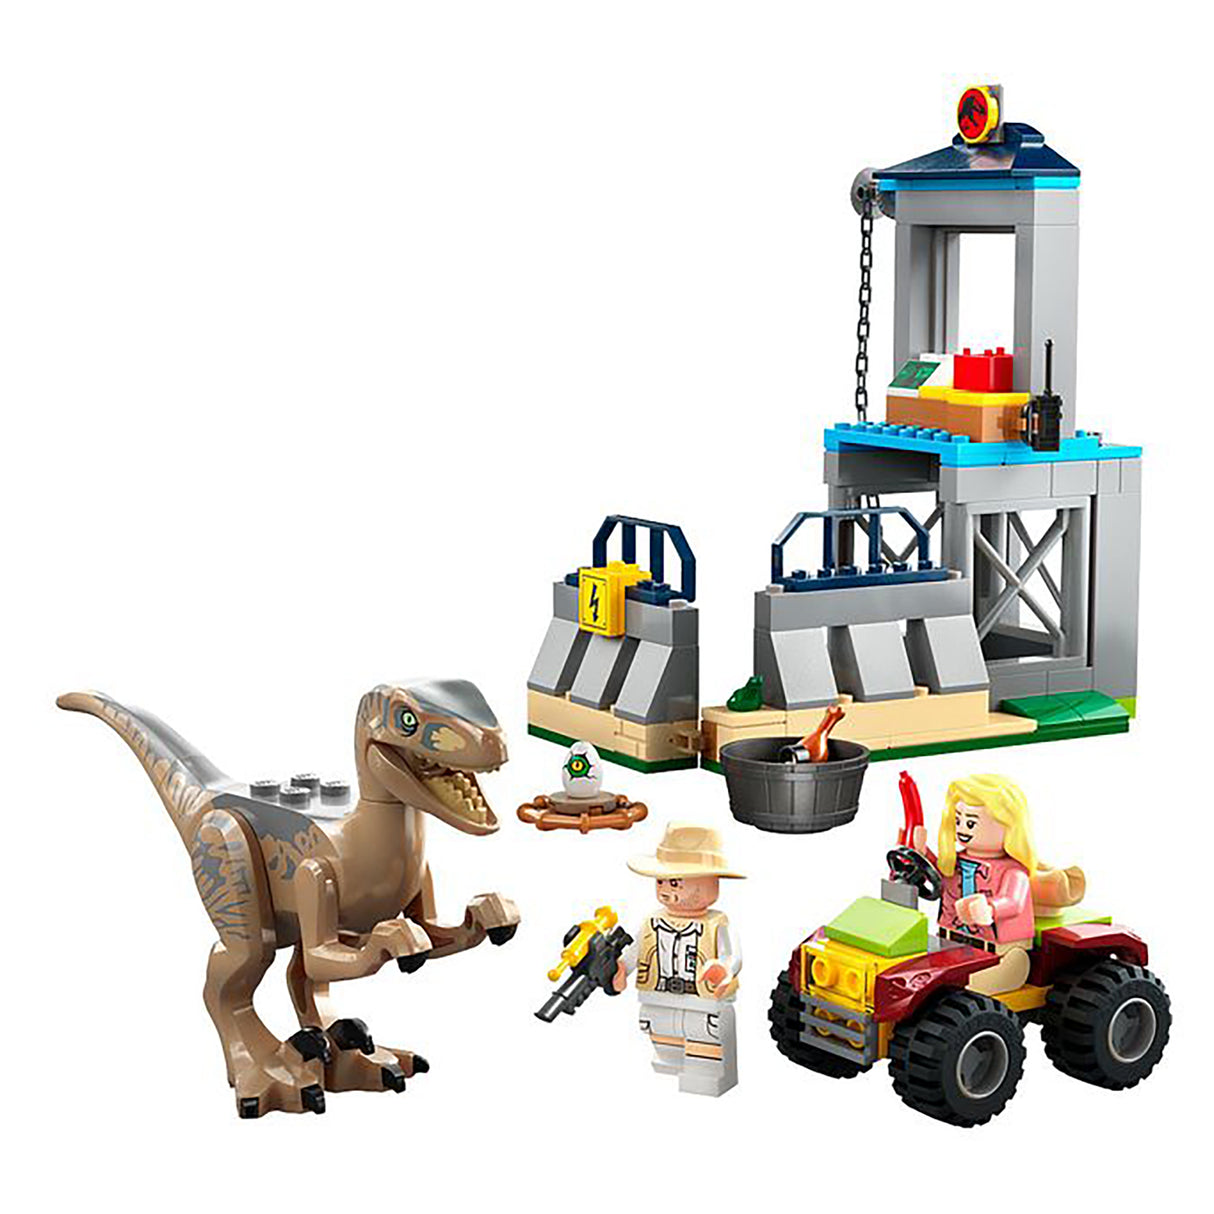 LEGO Jurassic Park Velociraptor Escape 76957 (137 pieces)